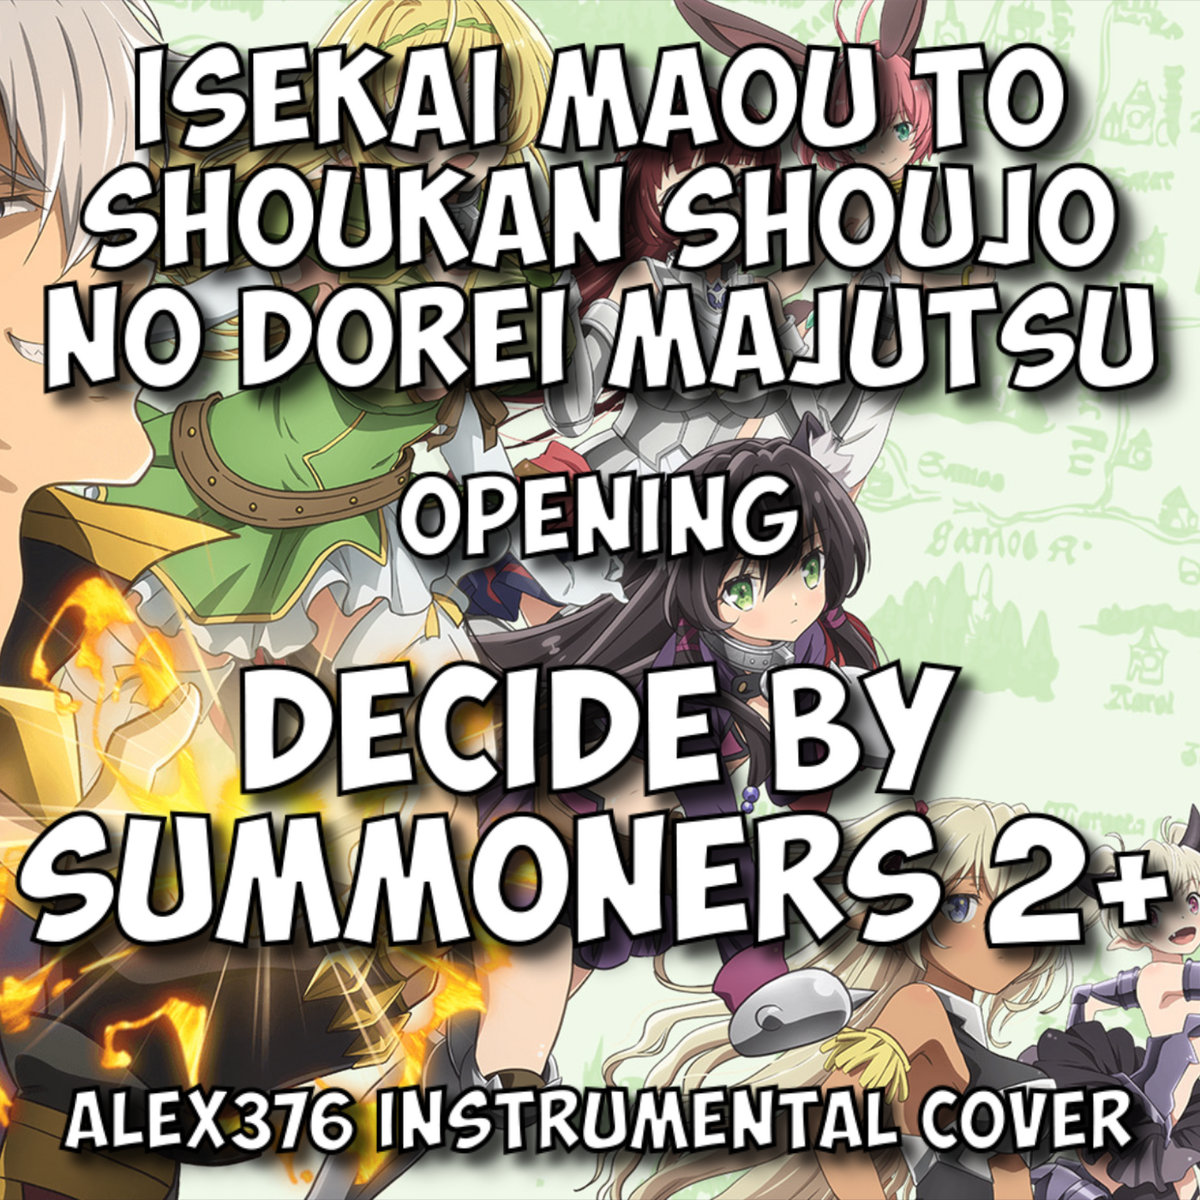 Isekai Maou to Shoukan Shoujo no Dorei Majutsu - OP - DeCIDE by SUMMONERS  2+ (Alex376 Instrumental Cover)